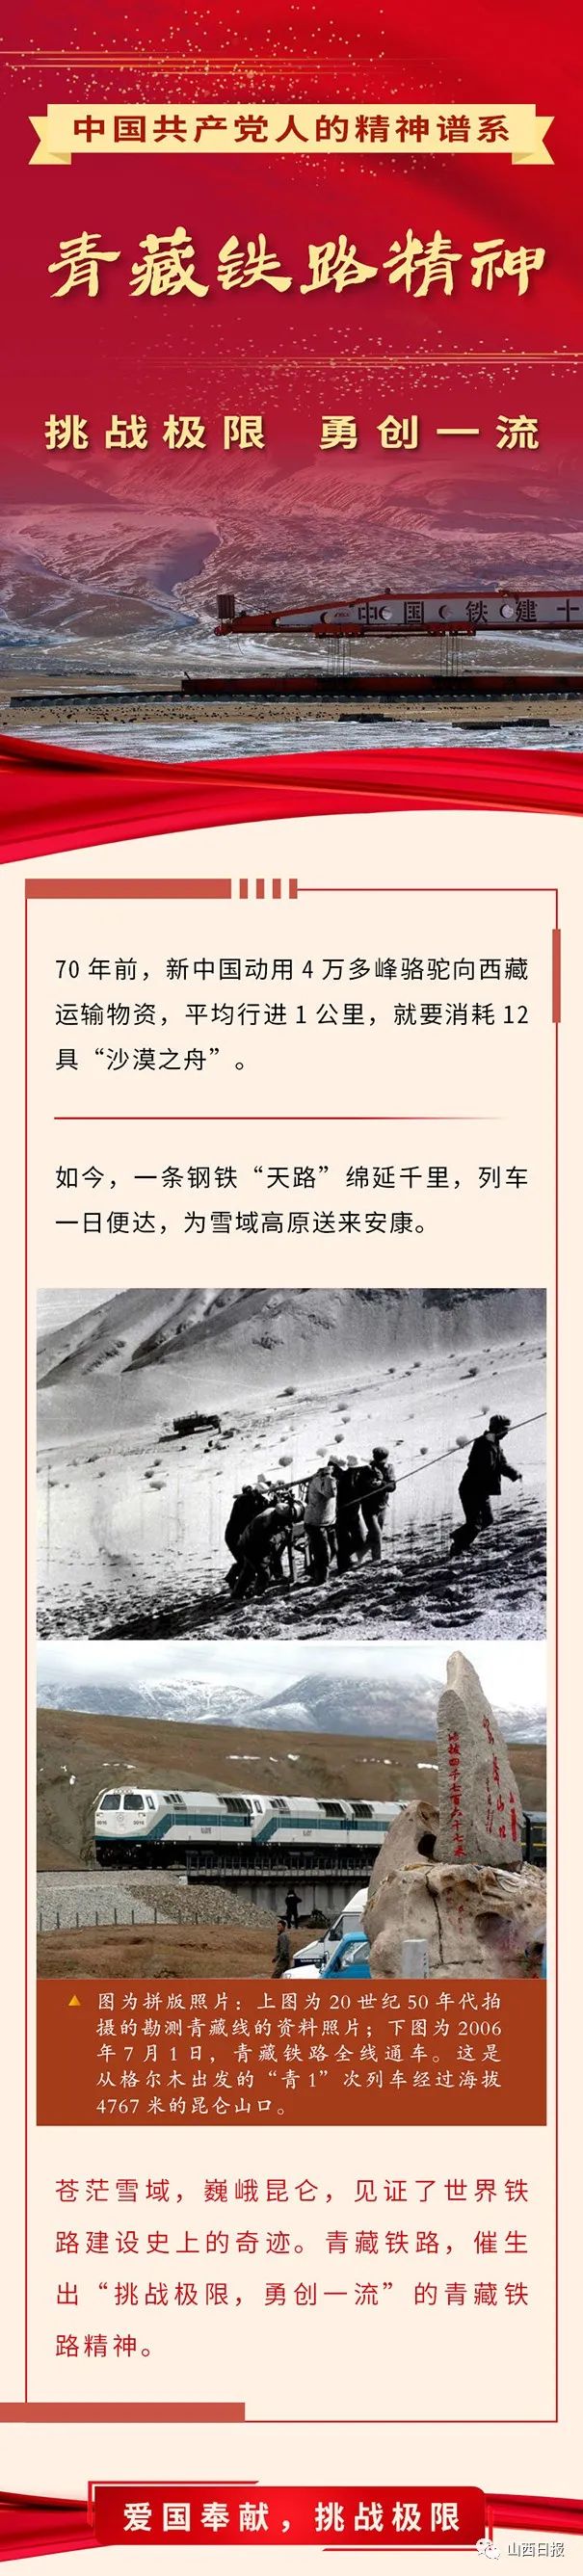 图解丨青藏铁路精神:挑战极限 勇创一流